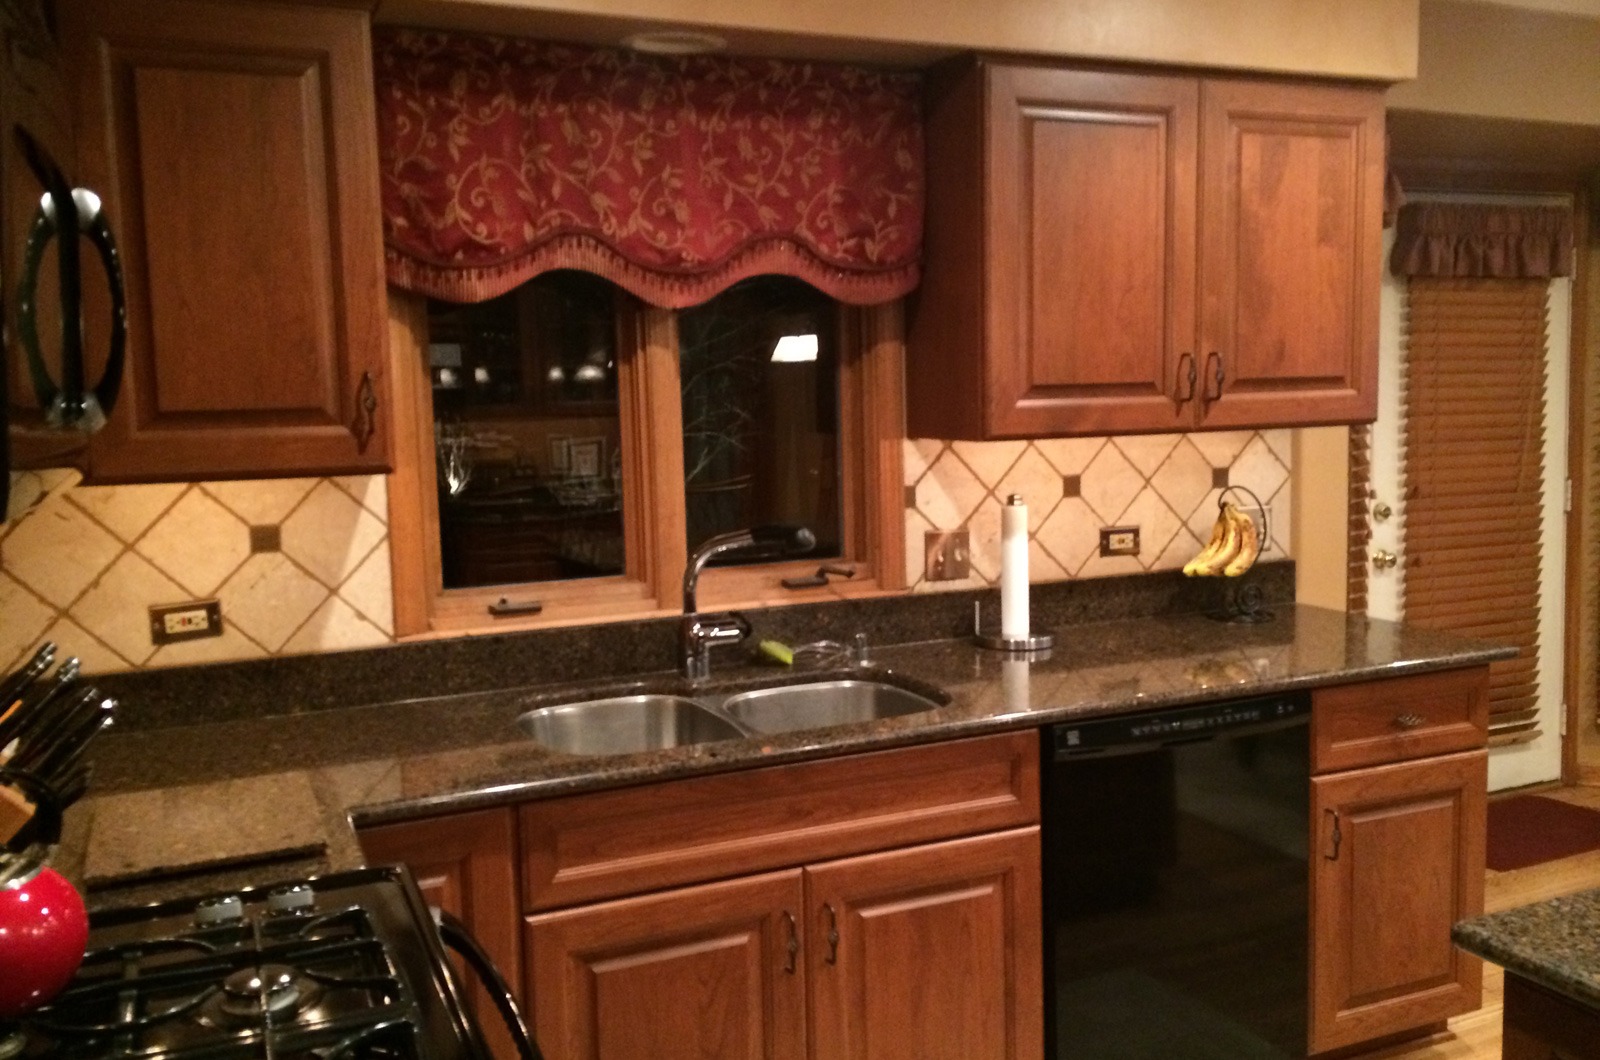 the kitchen master renovation traditional patterned backsplash redwood cabinets black appliances